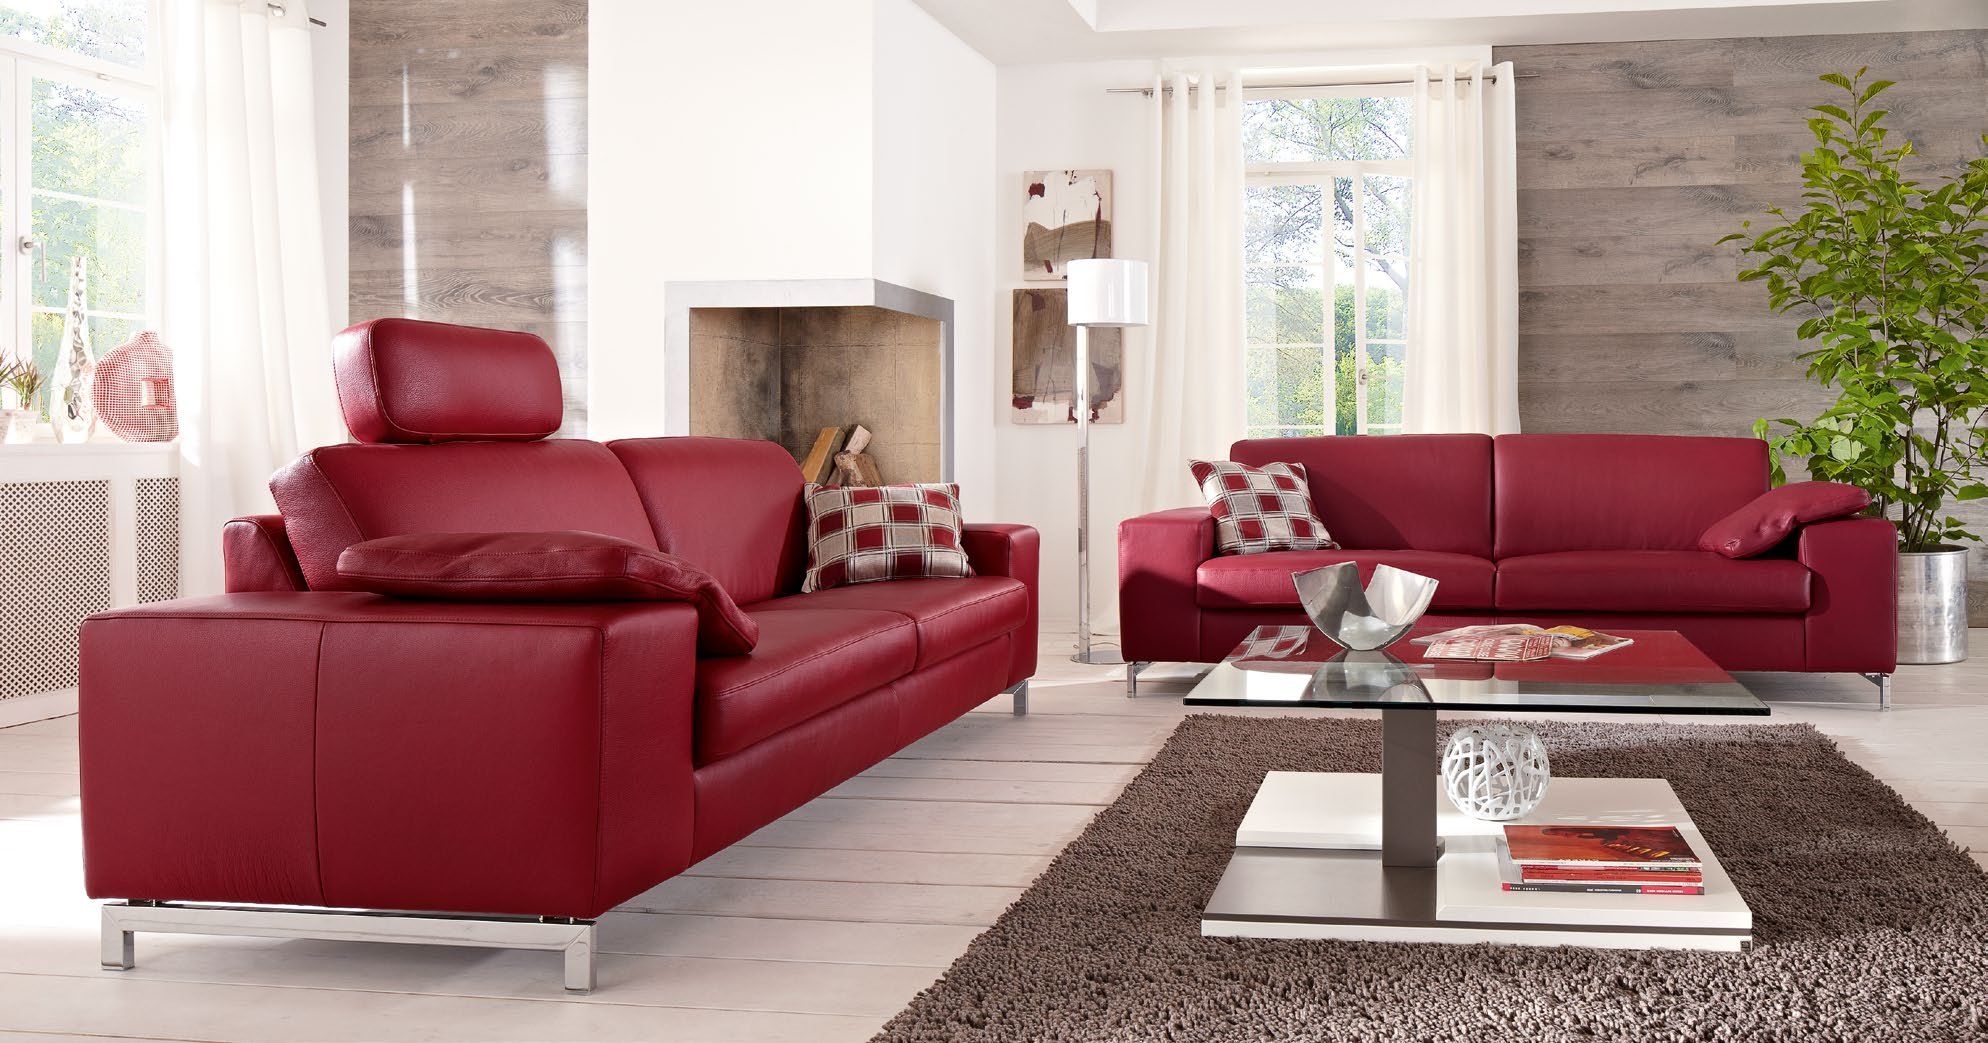 Verführung in Rot. Mit Leidenschaft werden Sie sitzen wollen Seduction in red. You will passionately want to sit * Klassisch-modernes Sofa- und Anreihprogramm mit immer neuen Gestaltungsmöglichkeiten.